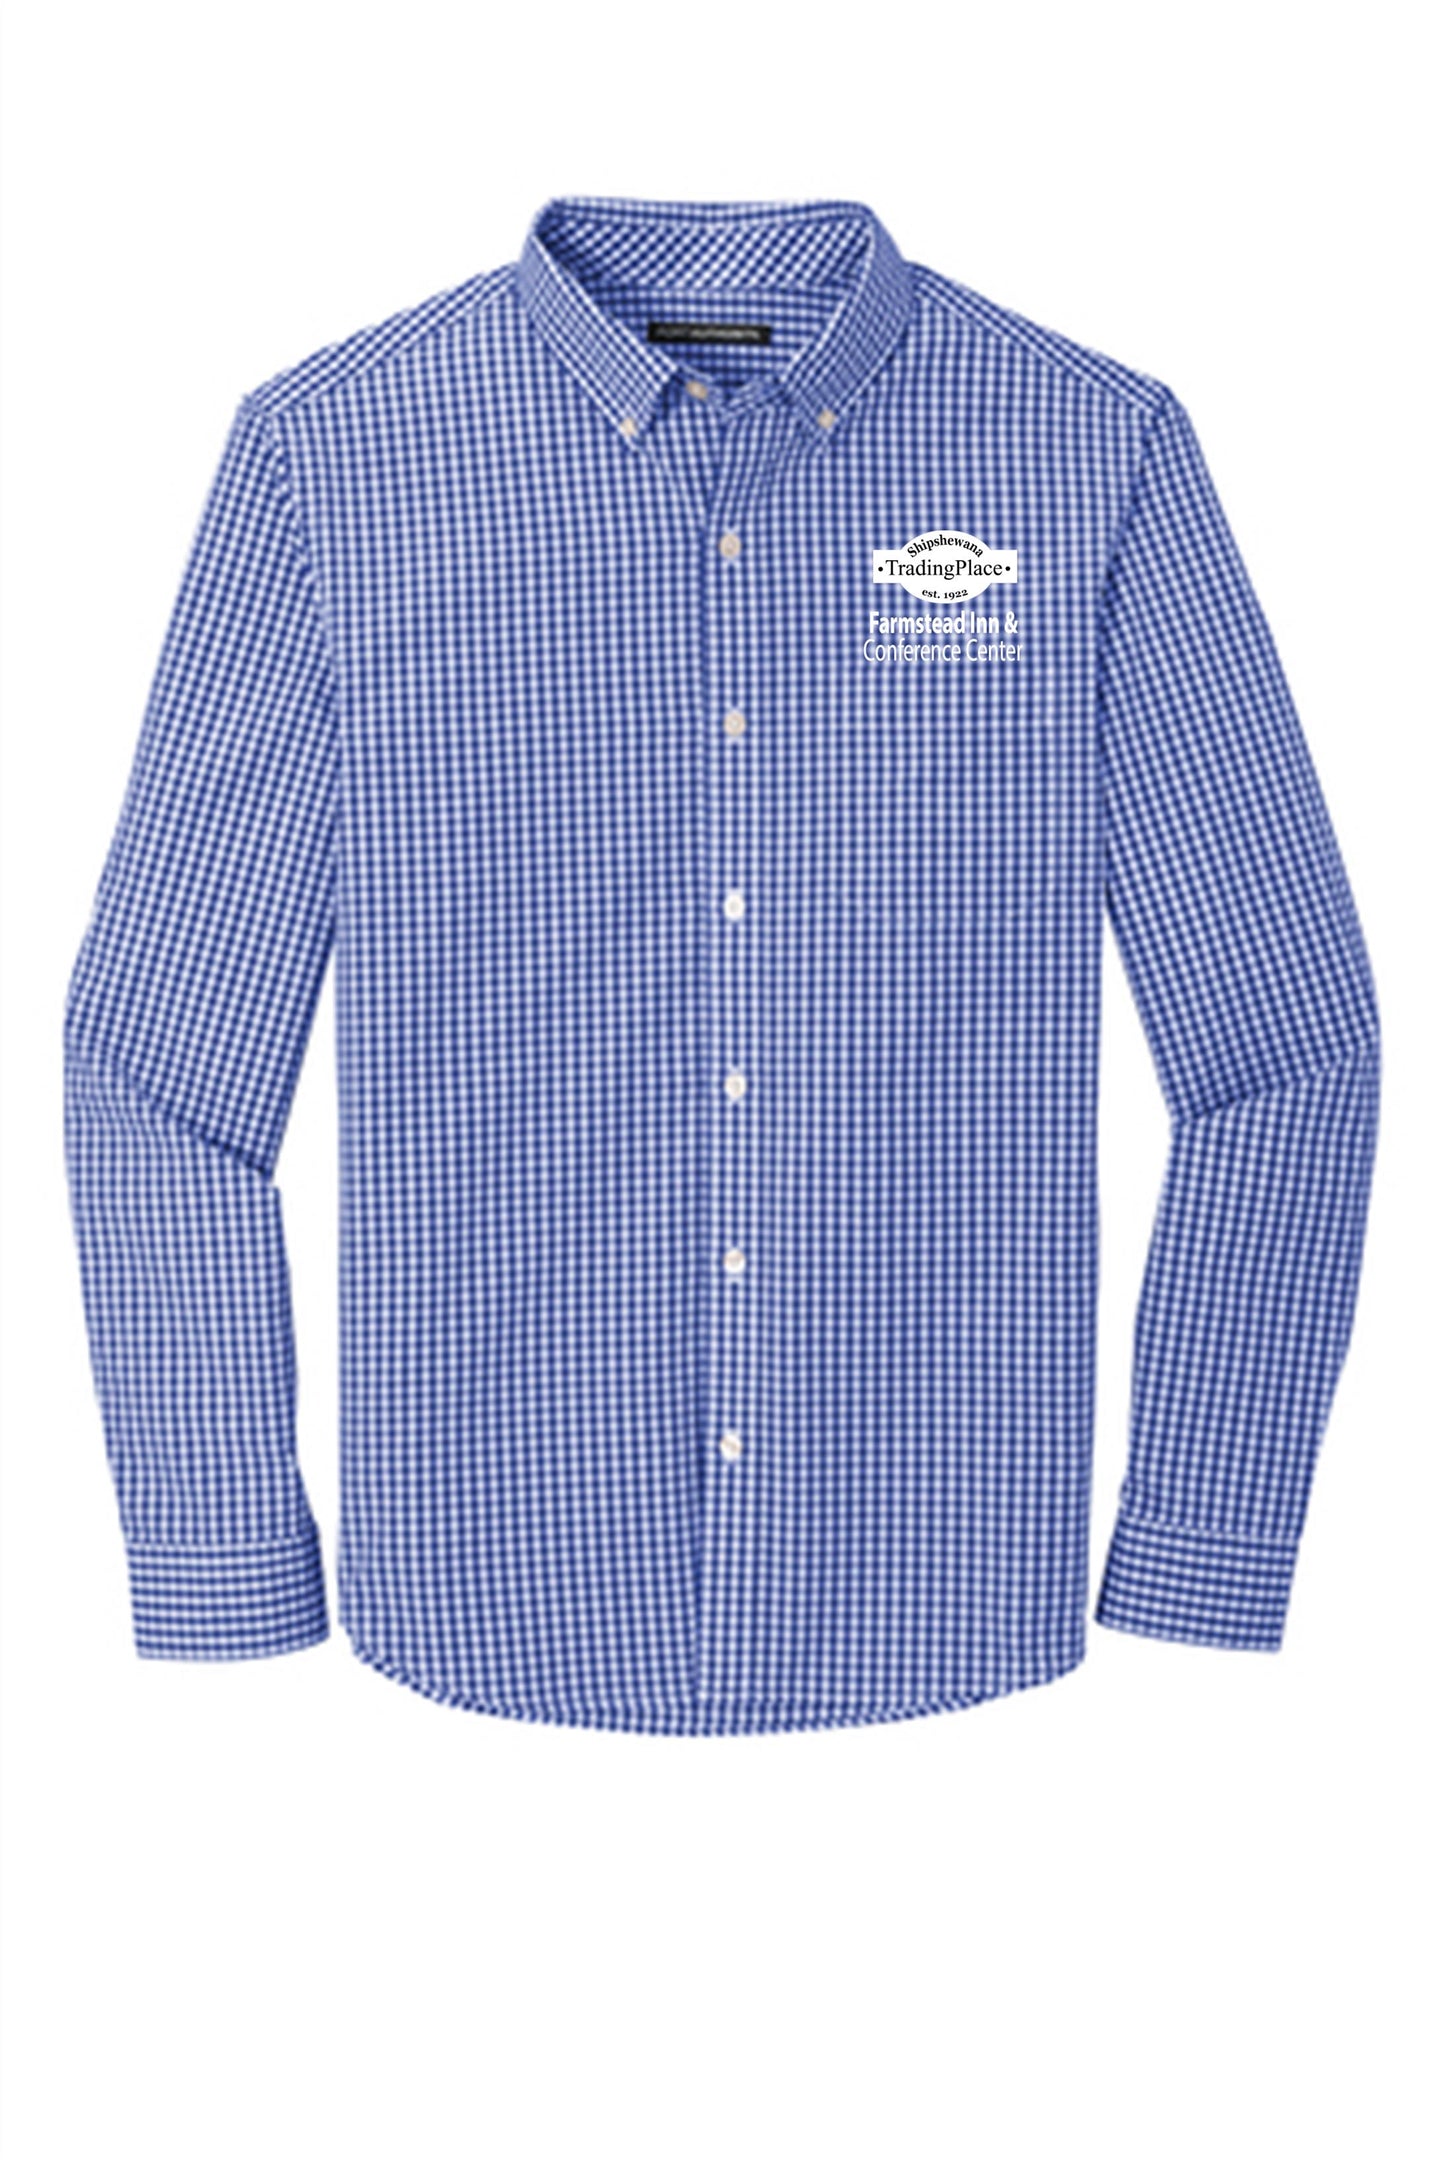 Gingham Easy Care Long Sleeve Shirt- Adult (Farmstead)